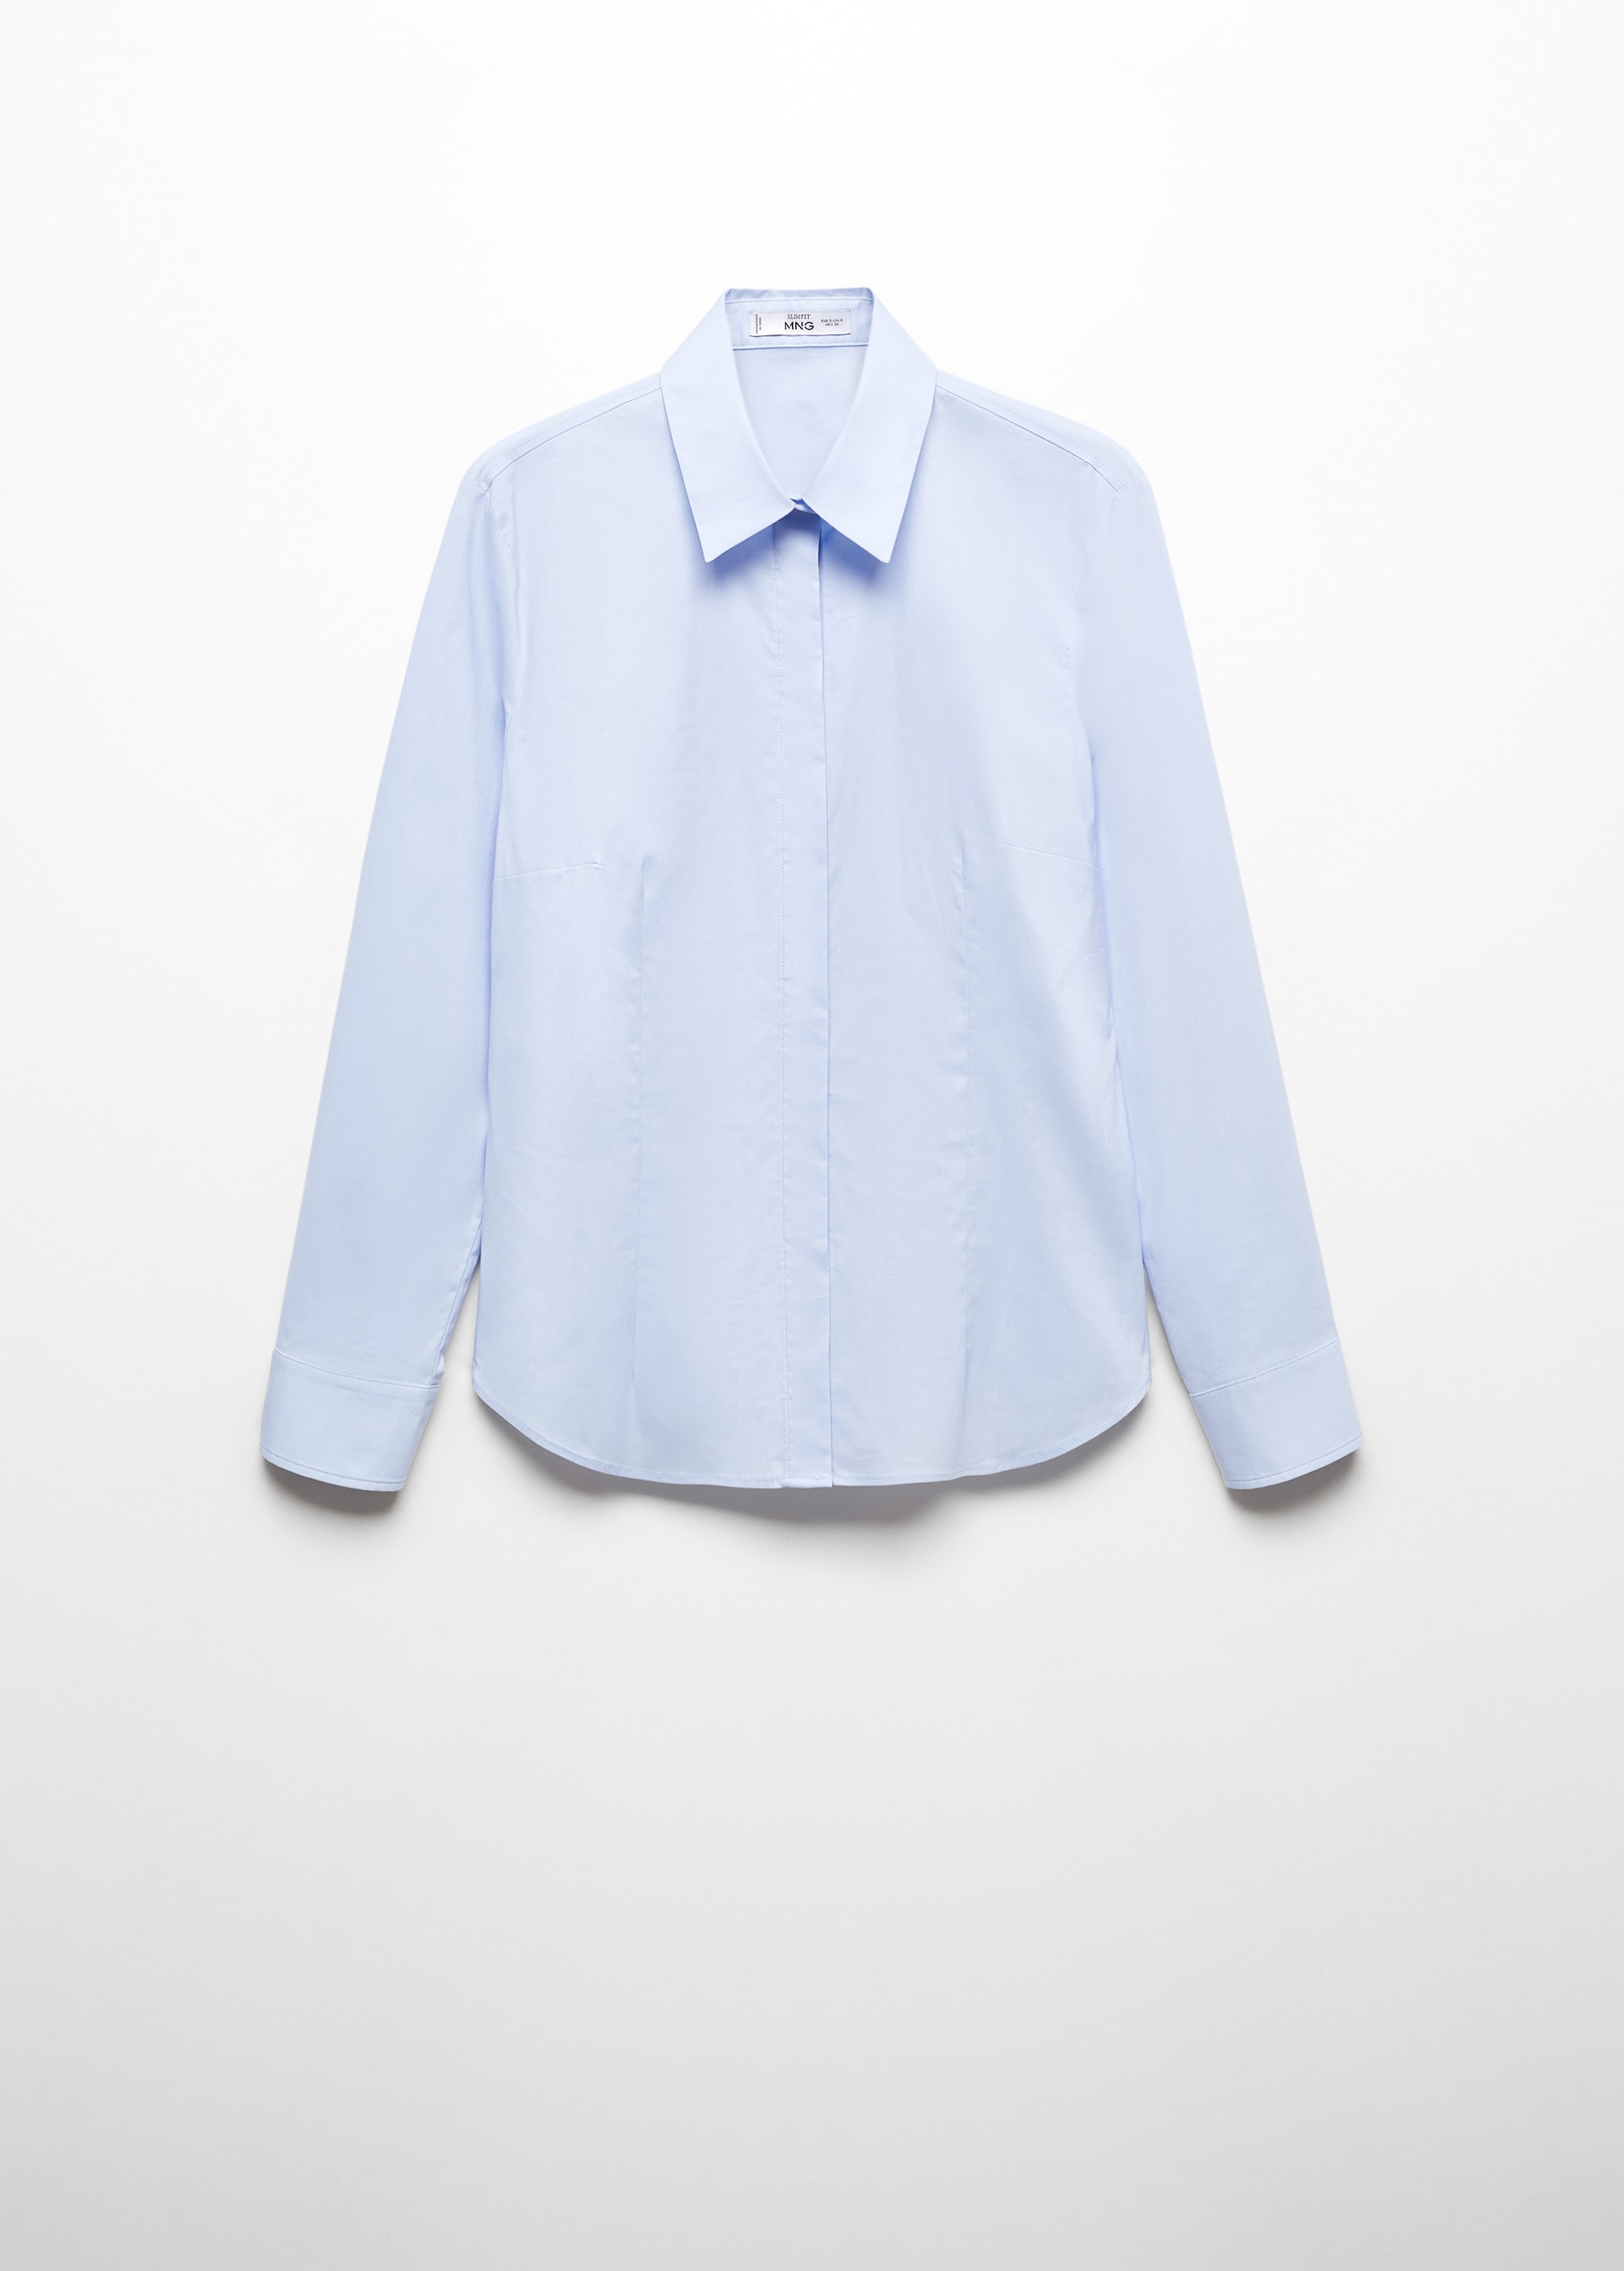 Camisa entallada algodón - Artículo sin modelo